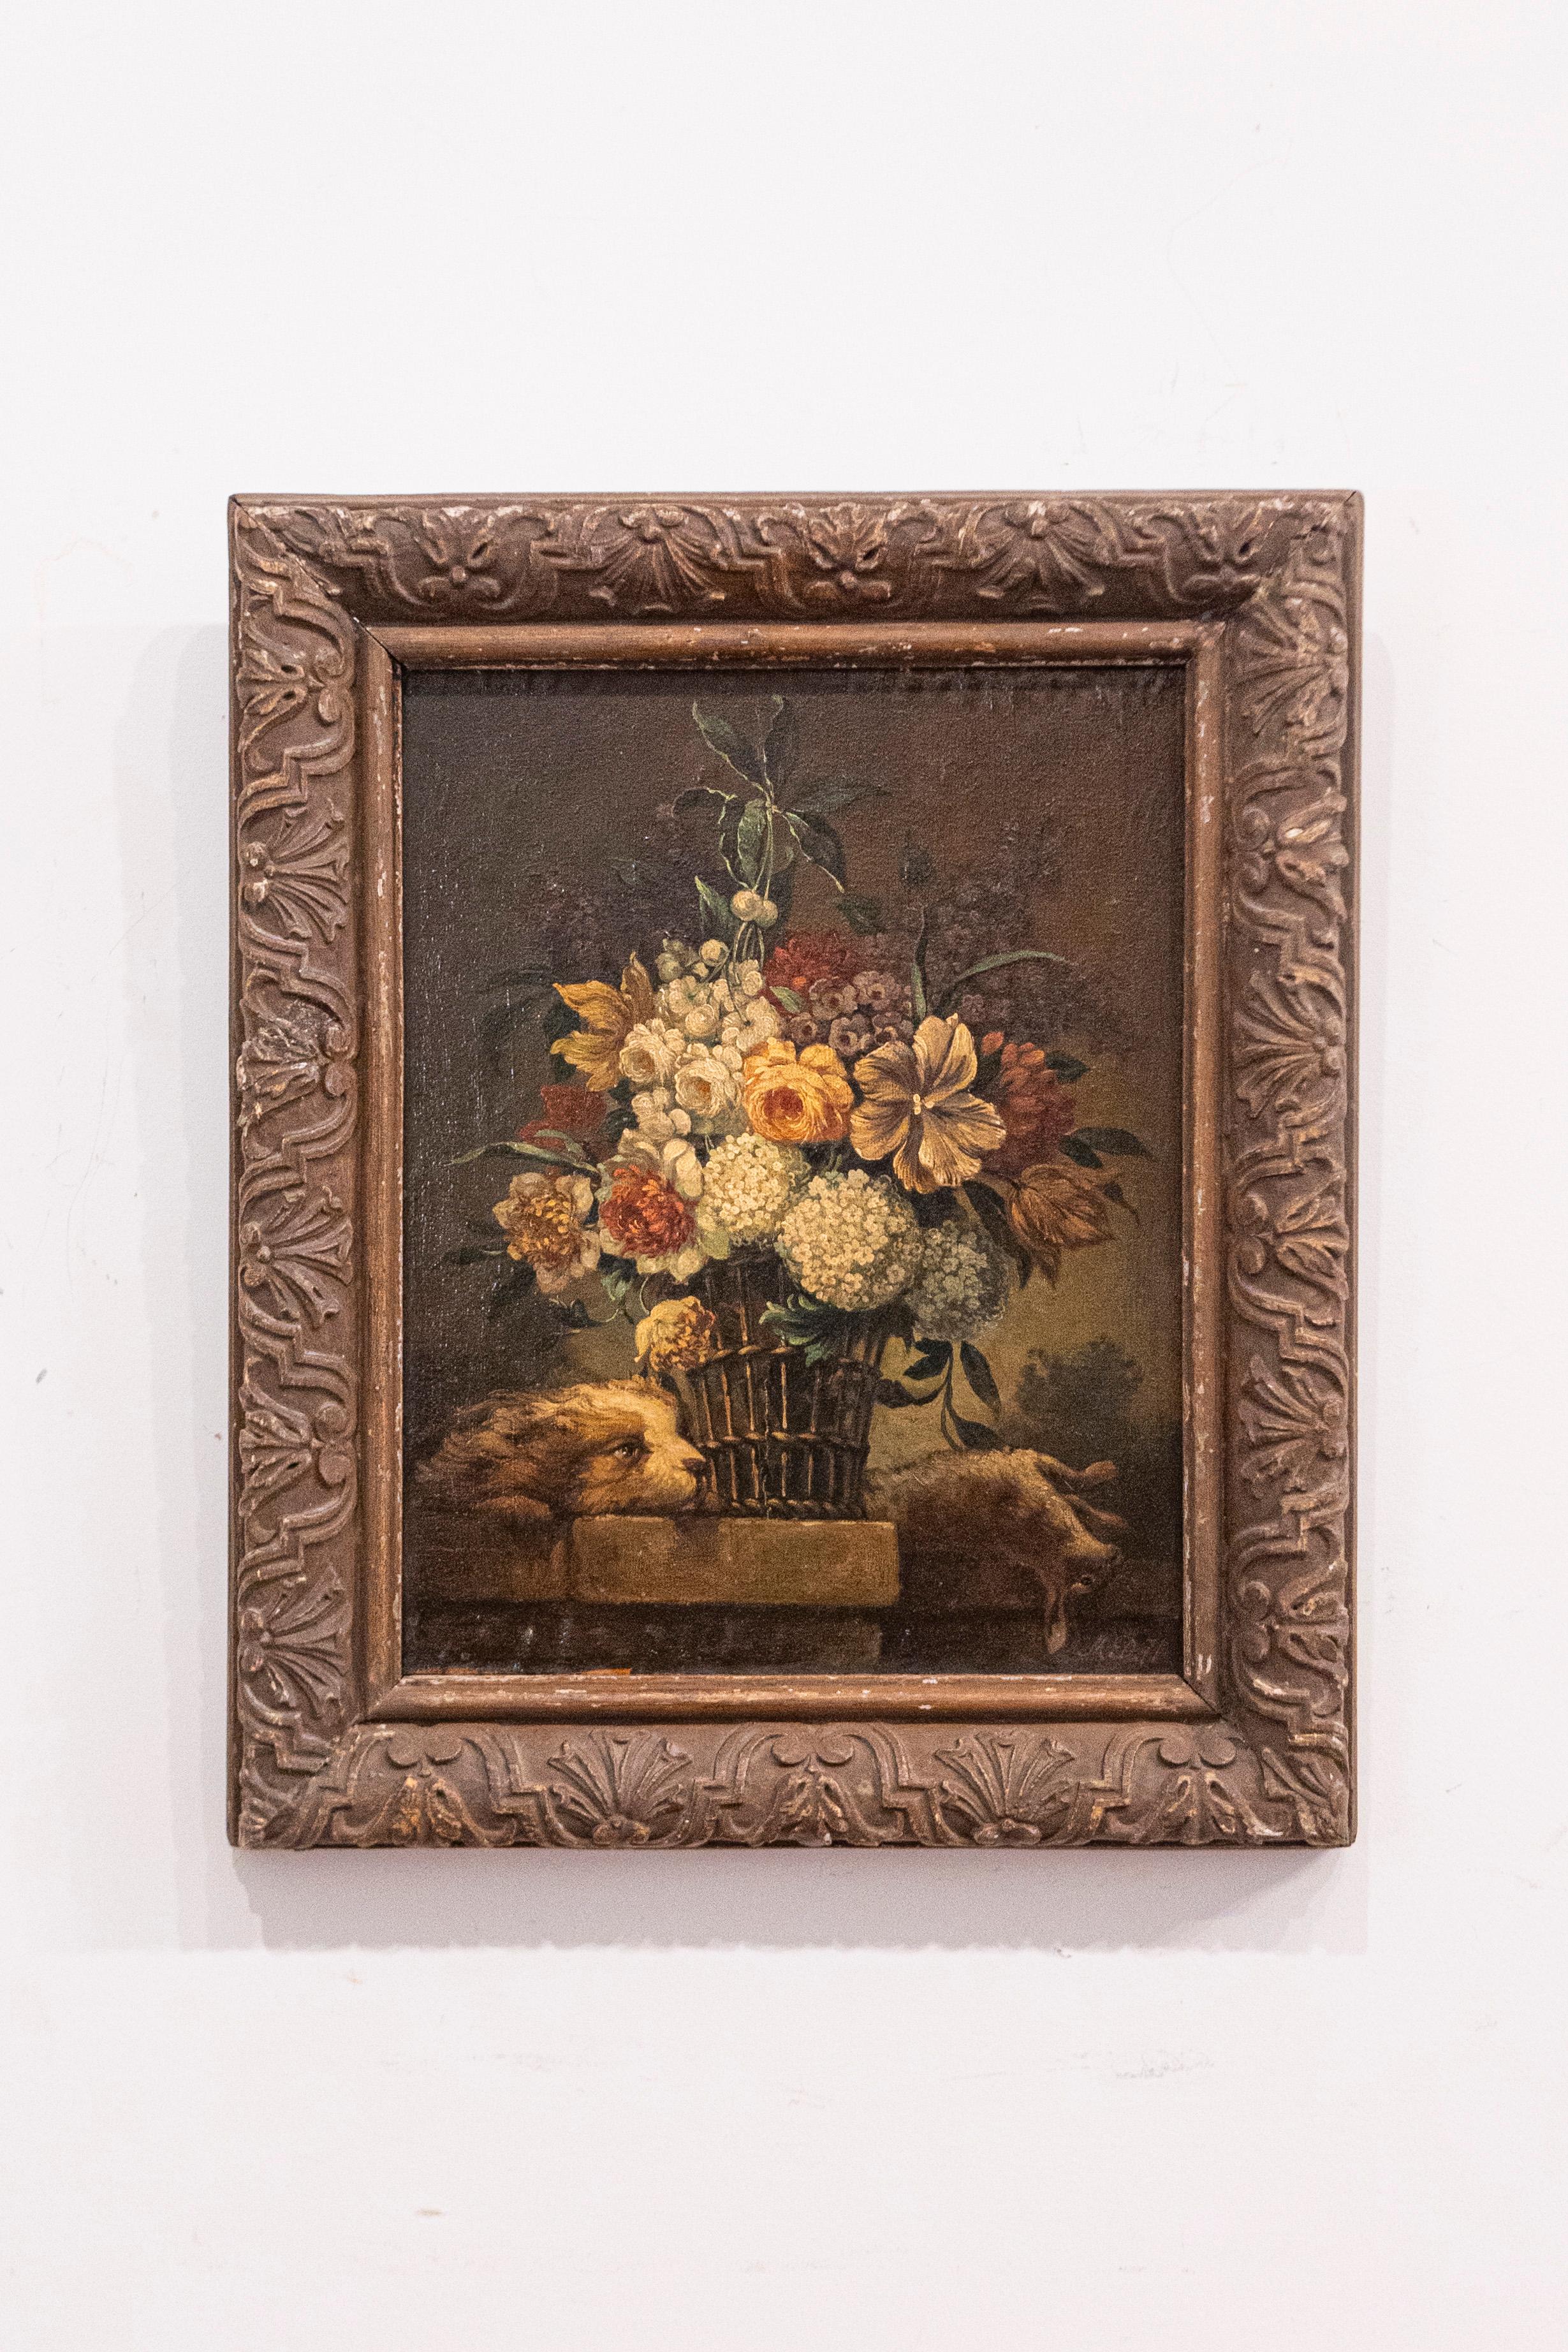 Ein französisches, gerahmtes Ölgemälde im Stil von Louis XV auf einer Tafel mit Blumenstillleben aus dem späten 19. Jahrhundert, mit Motiven von Hunden und Kaninchen. Dieses französische Gemälde, das im dritten Viertel des 19. Jahrhunderts entstand,